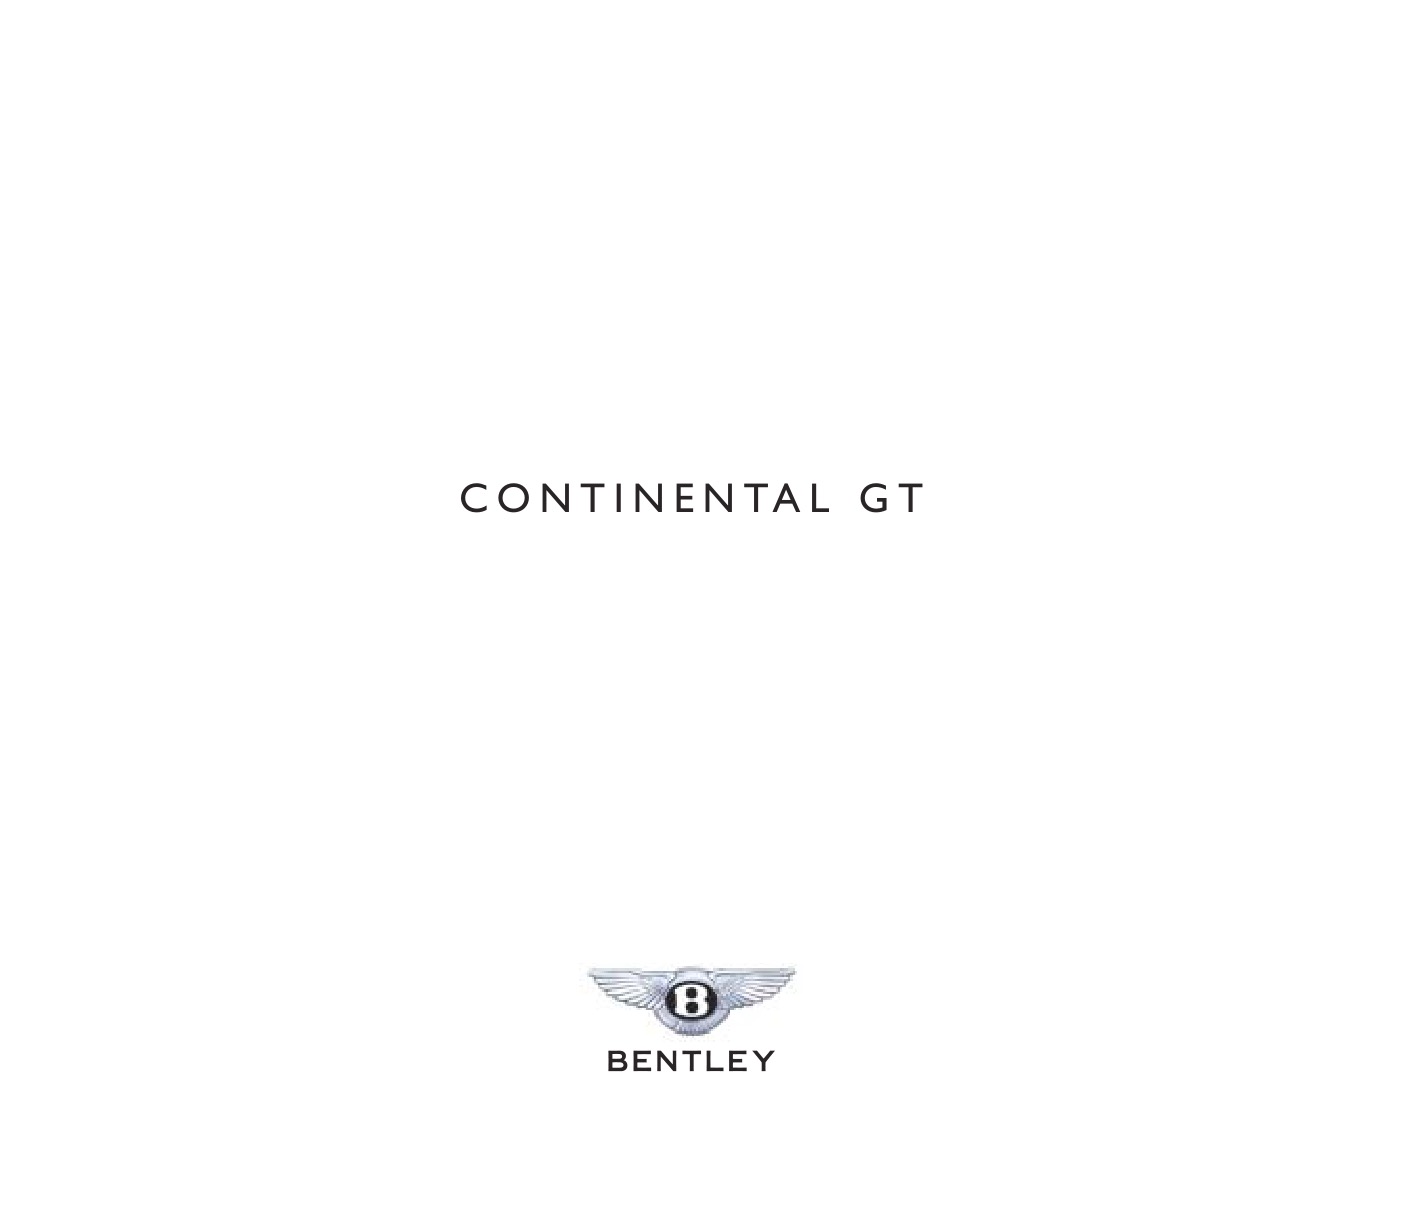 2008 Bentley Continental GT Brochure